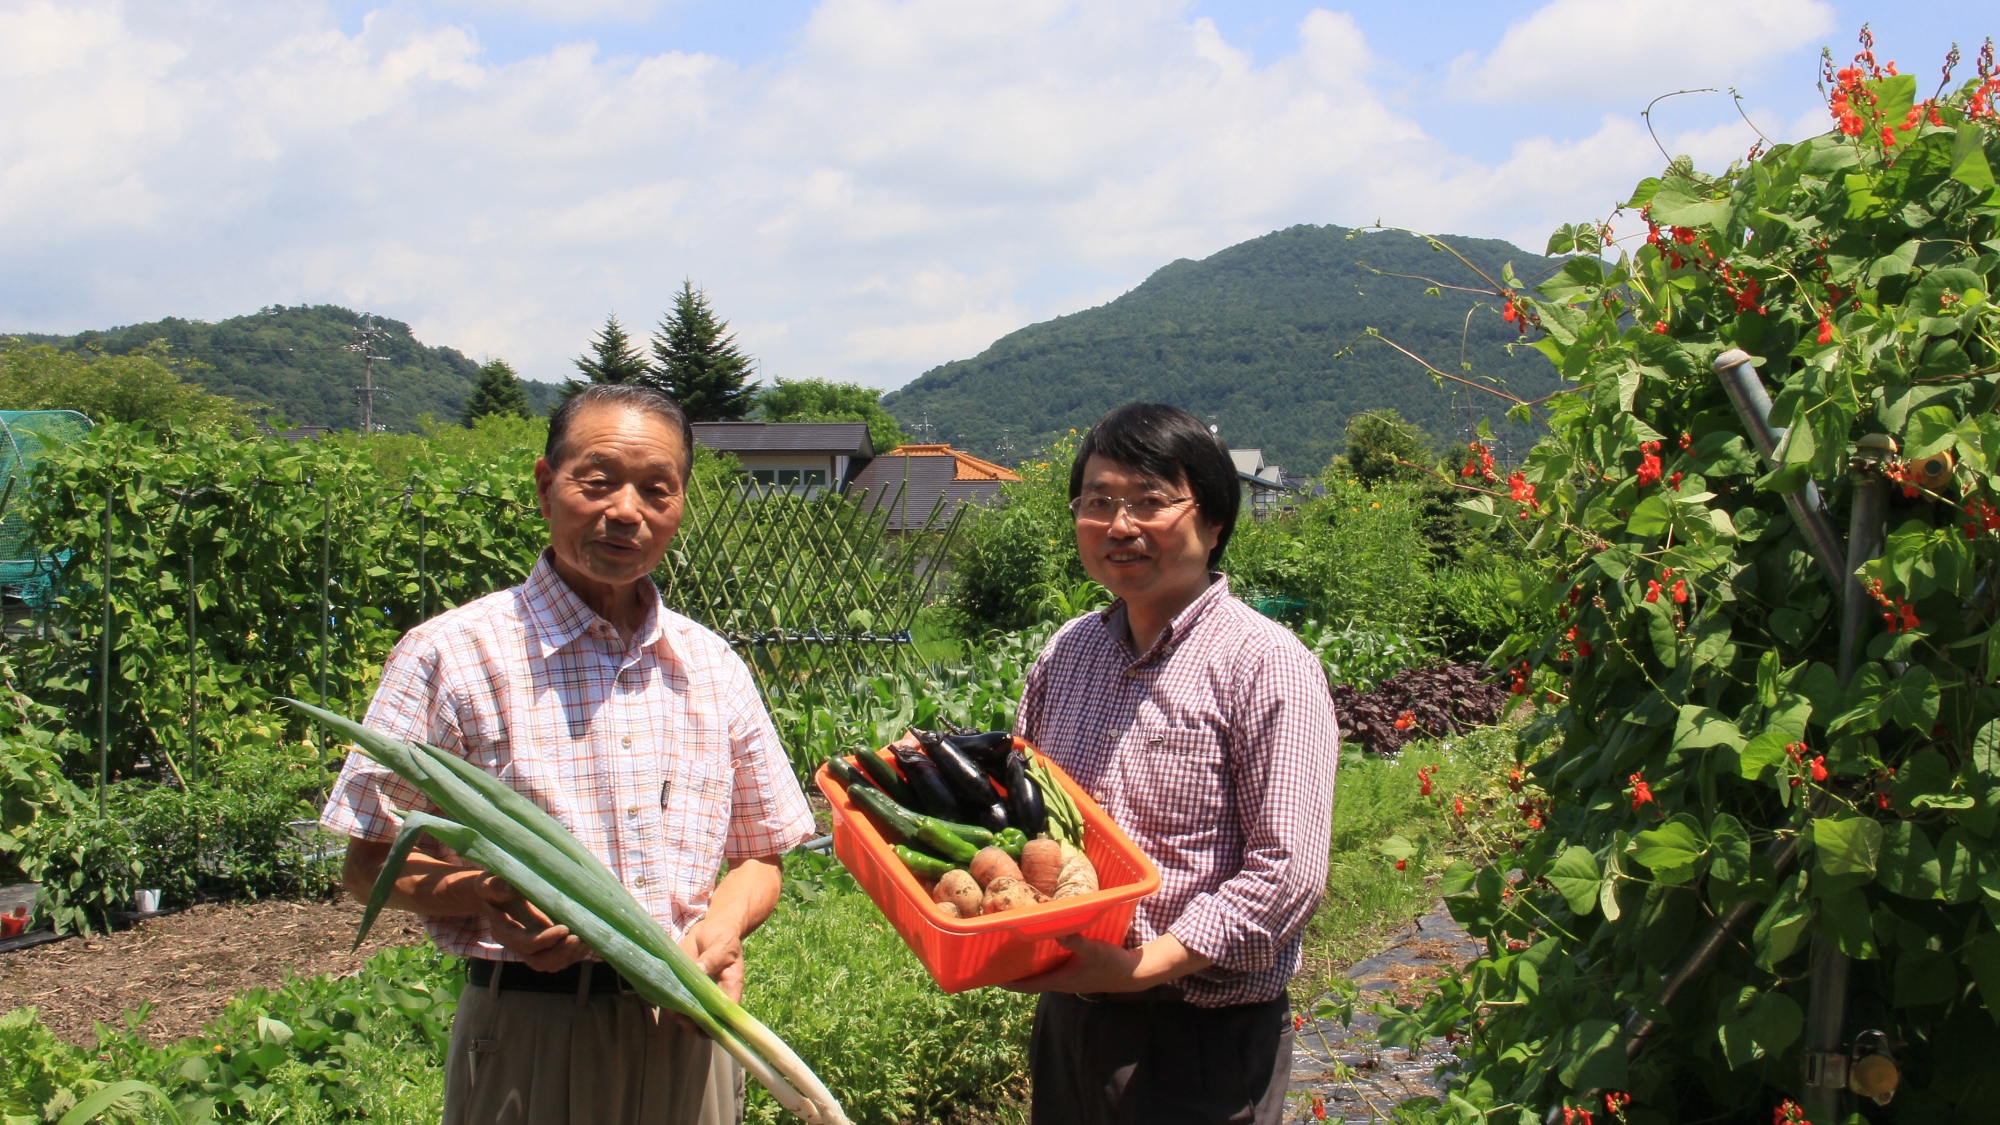 小さな畑があり、お客様に新鮮なお野菜をお楽しみいただけるよう、大切に栽培しています。